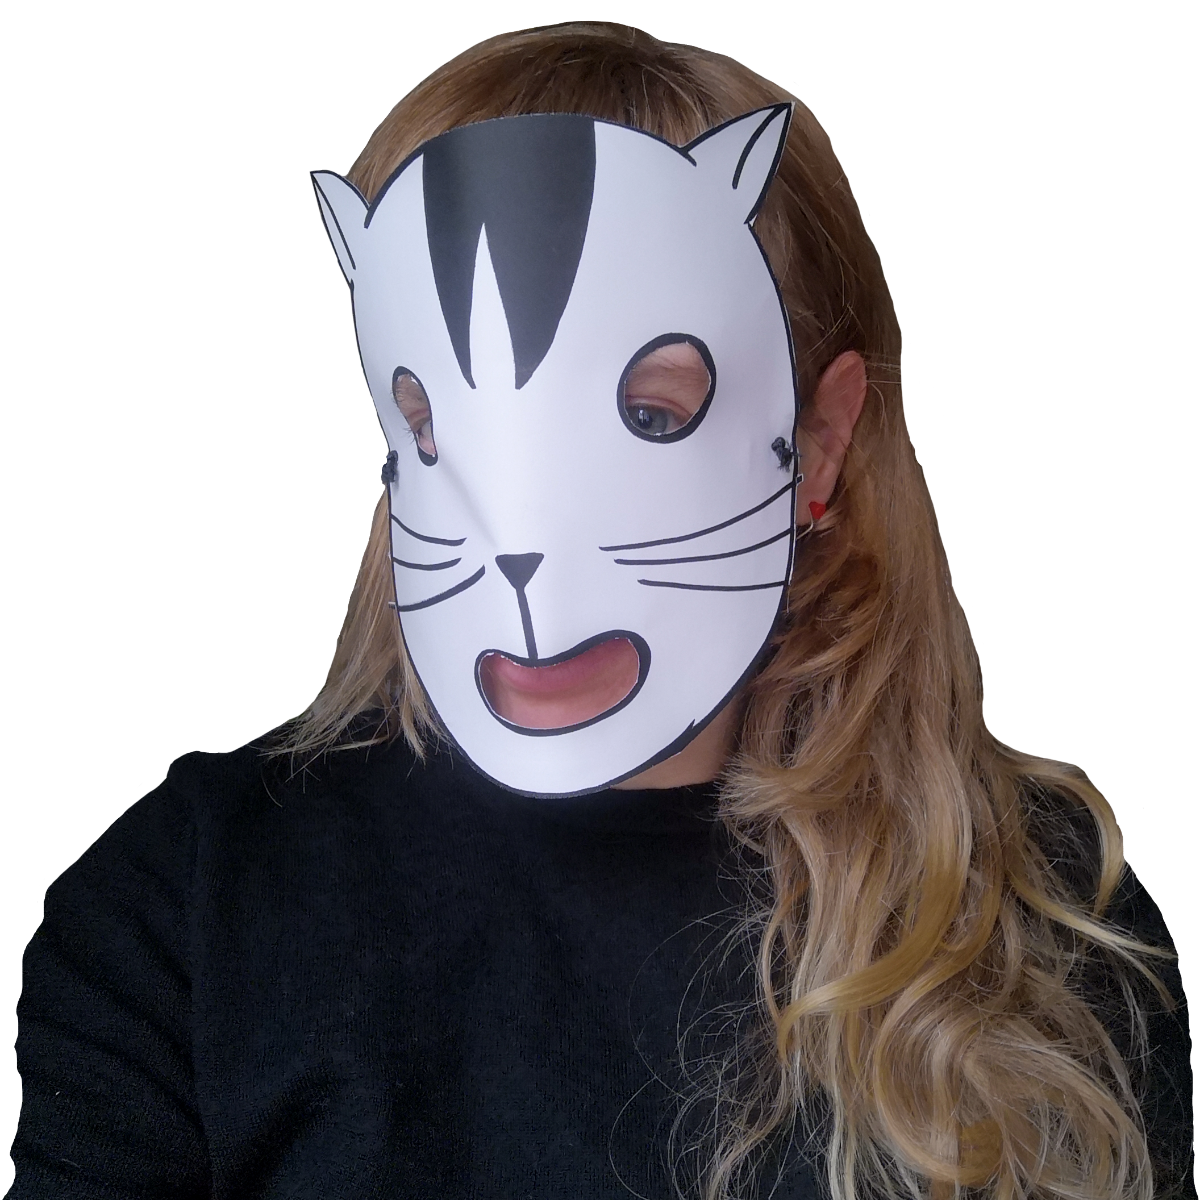 Photo von Ulrike Uhlig mit einer Papiermaske, die ein Katzengesicht zeigt